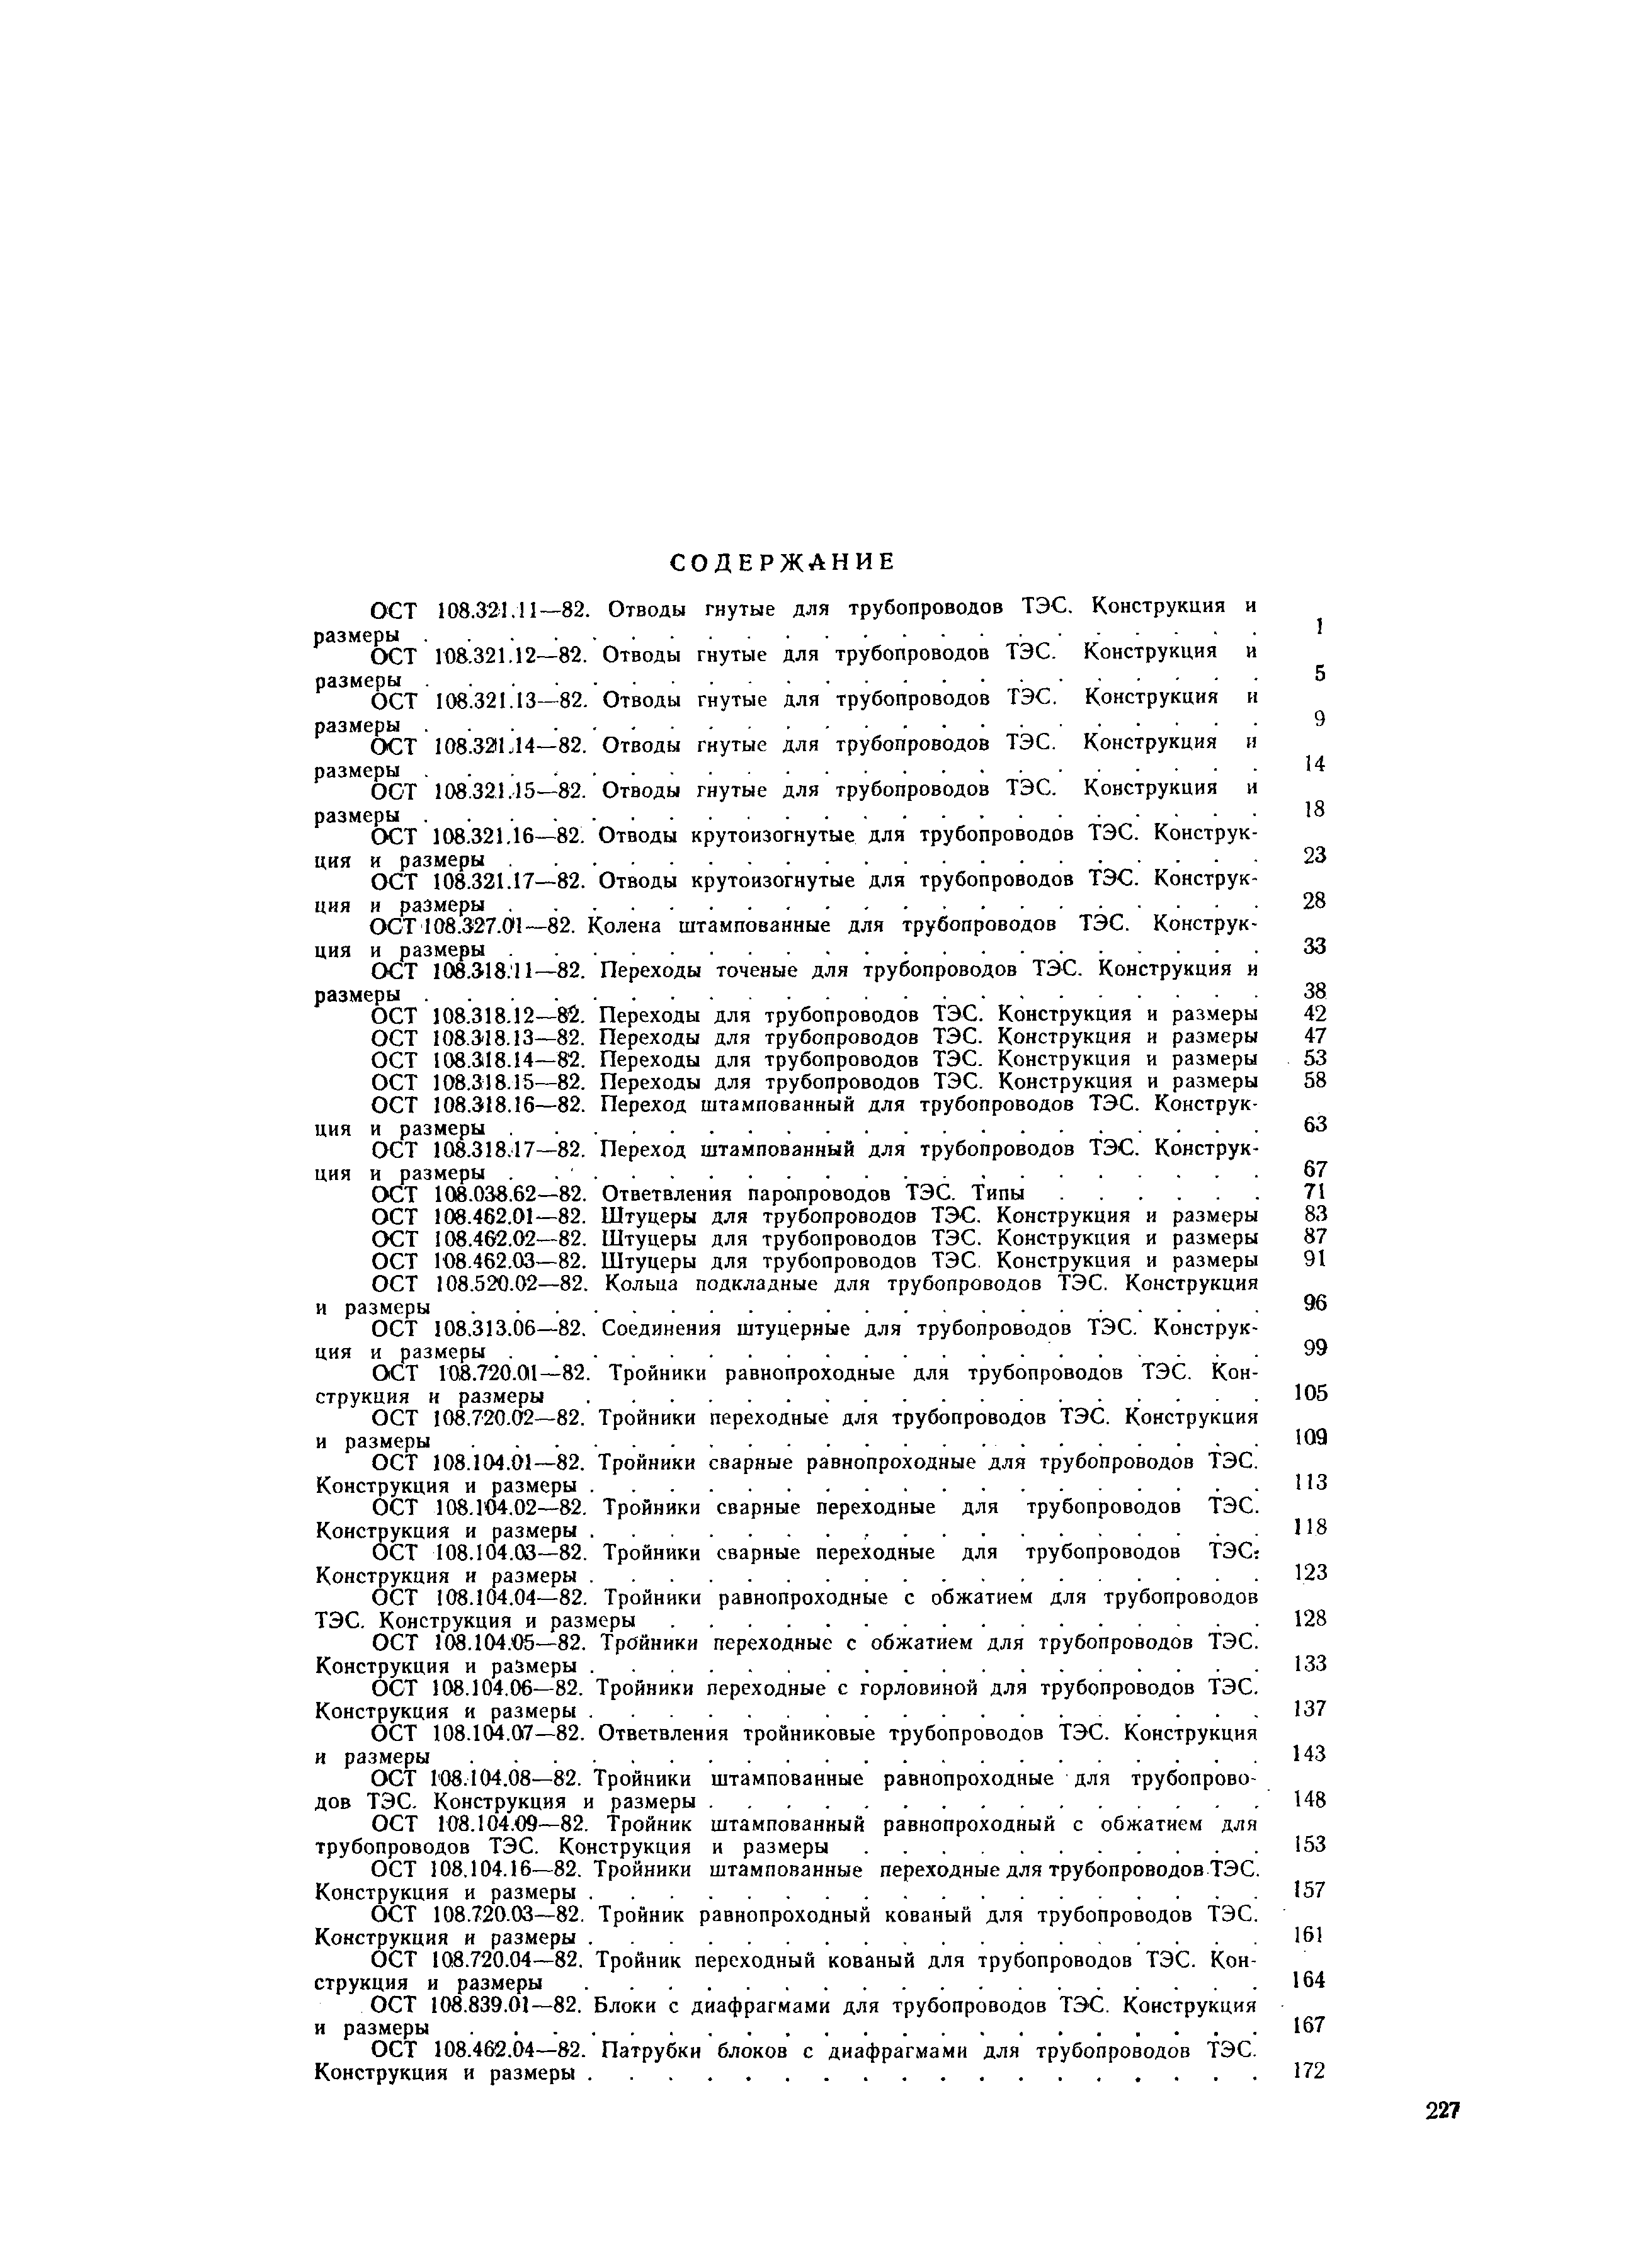 ОСТ 108.530.01-82